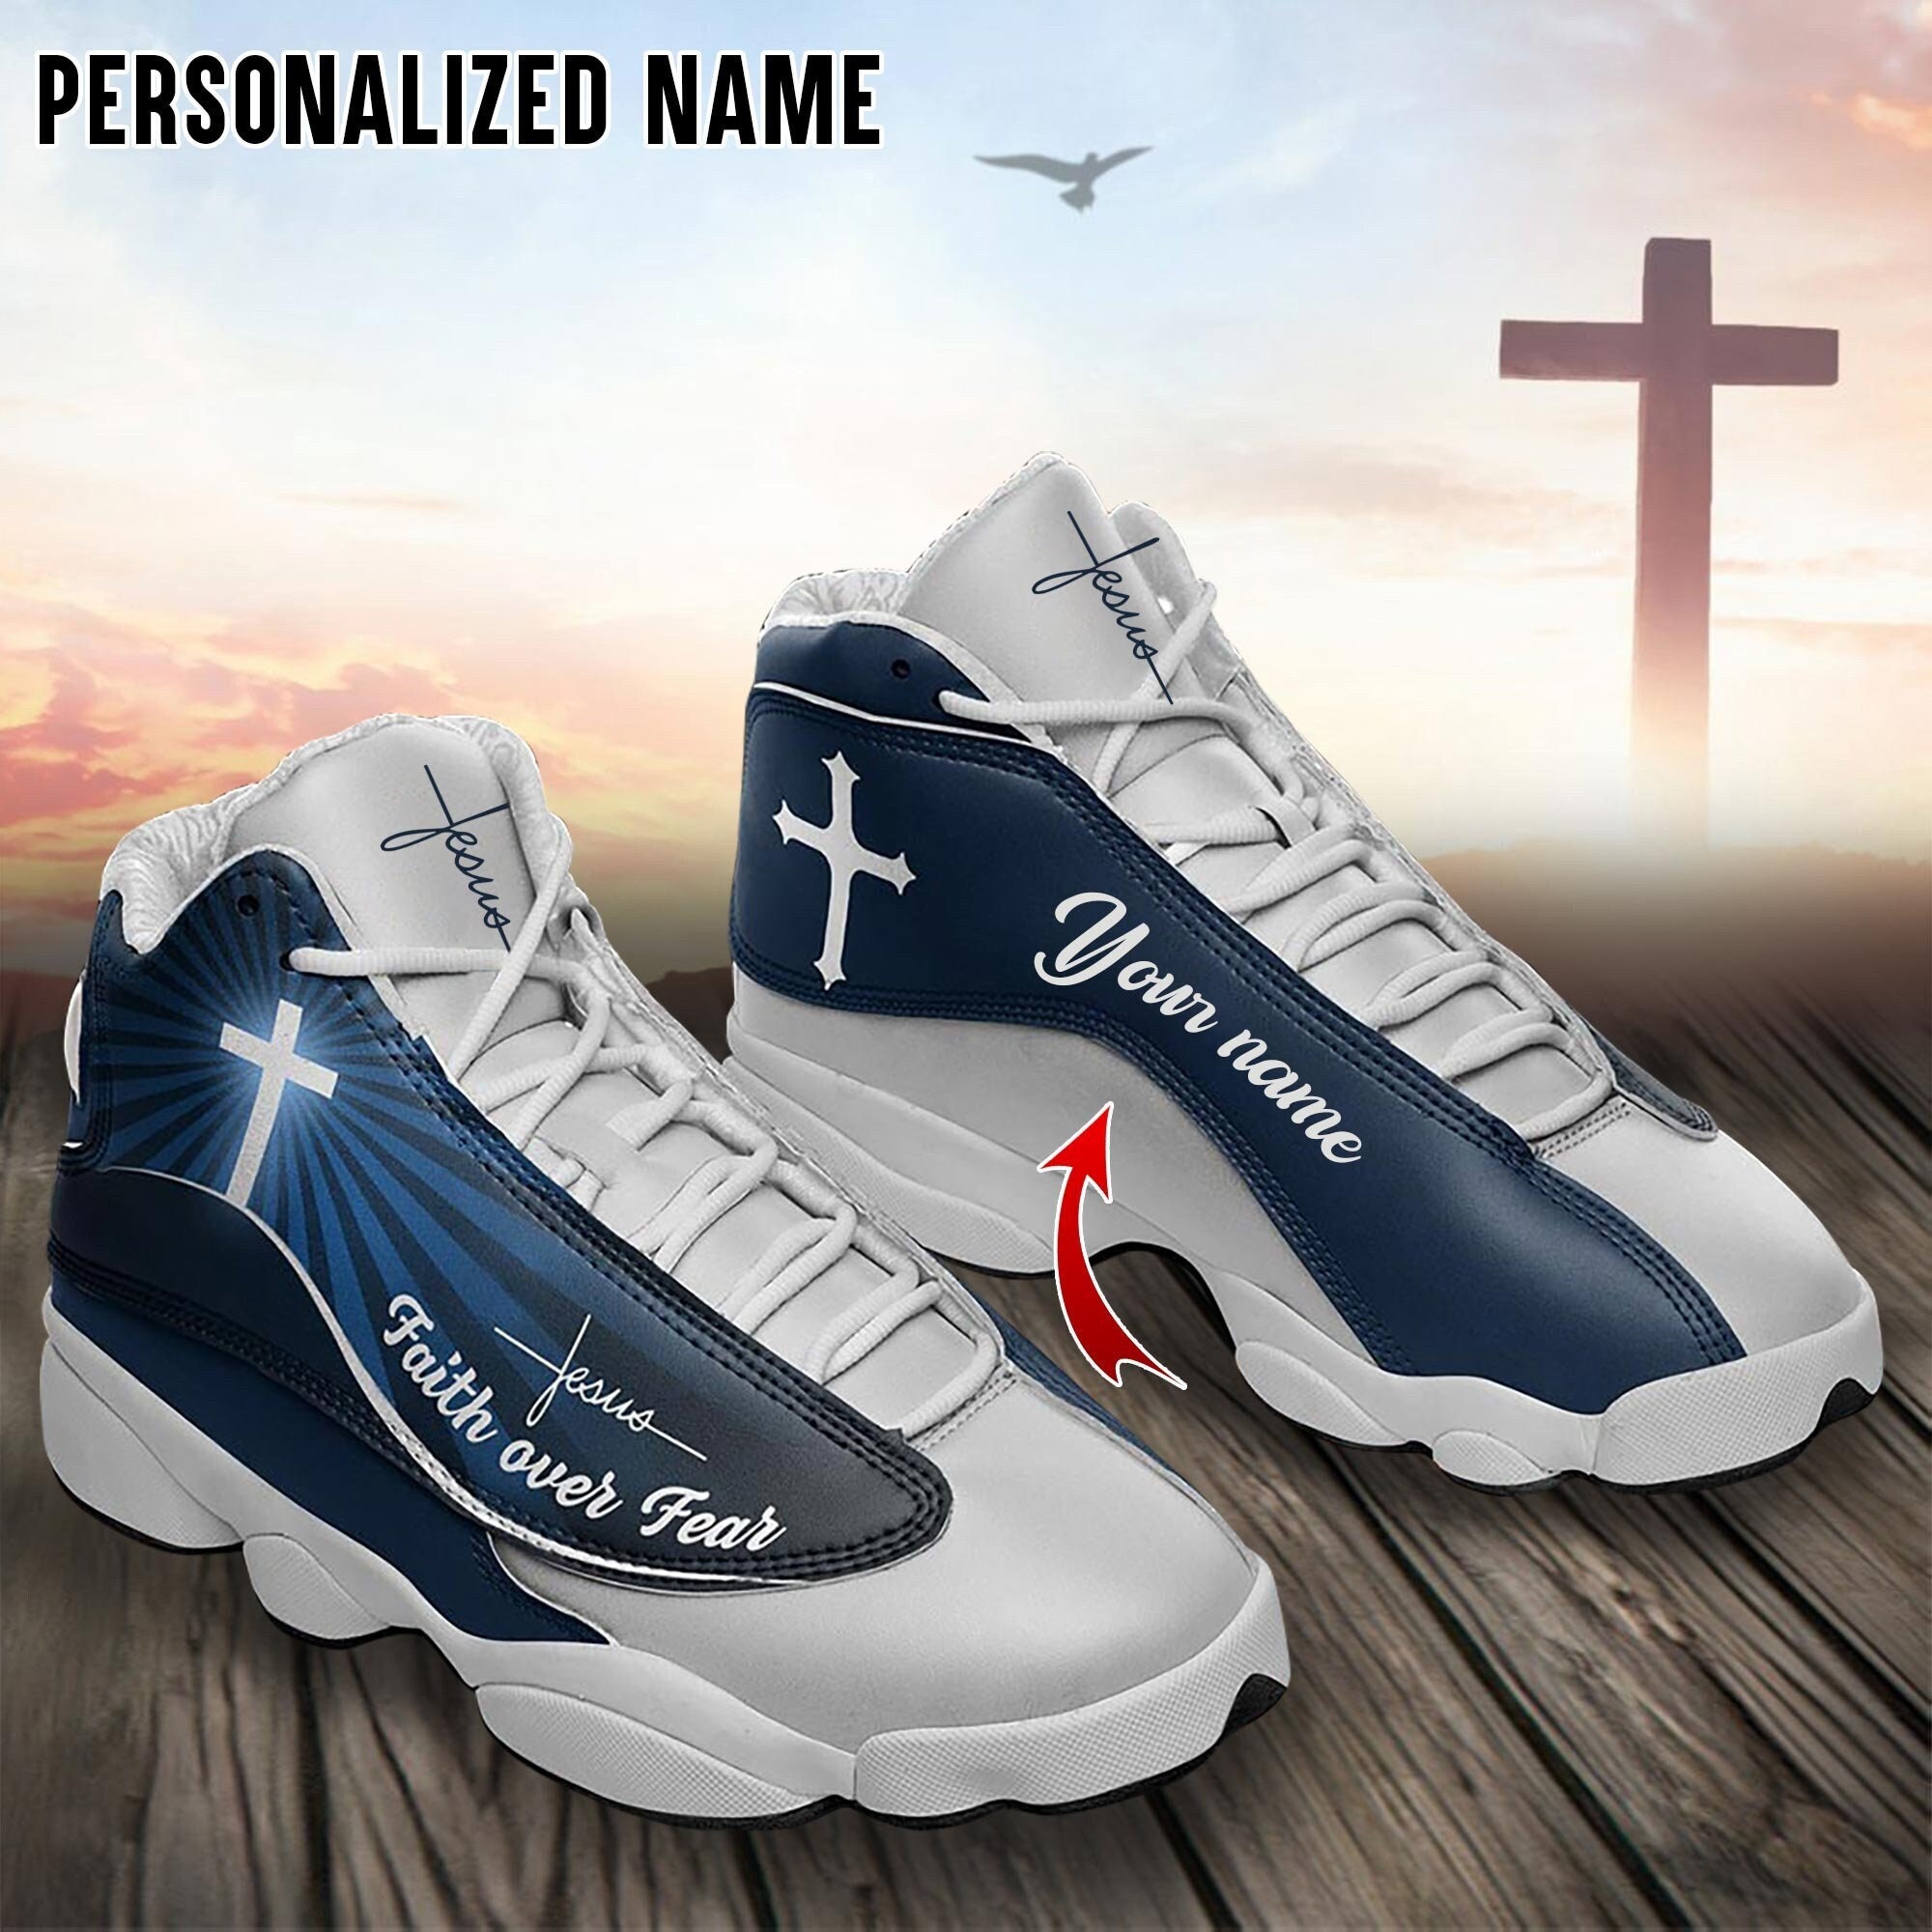 Jesus Faith Over Fear High Top Shoes Christian Cross Faith Based Gifts -  PrideearthDesign